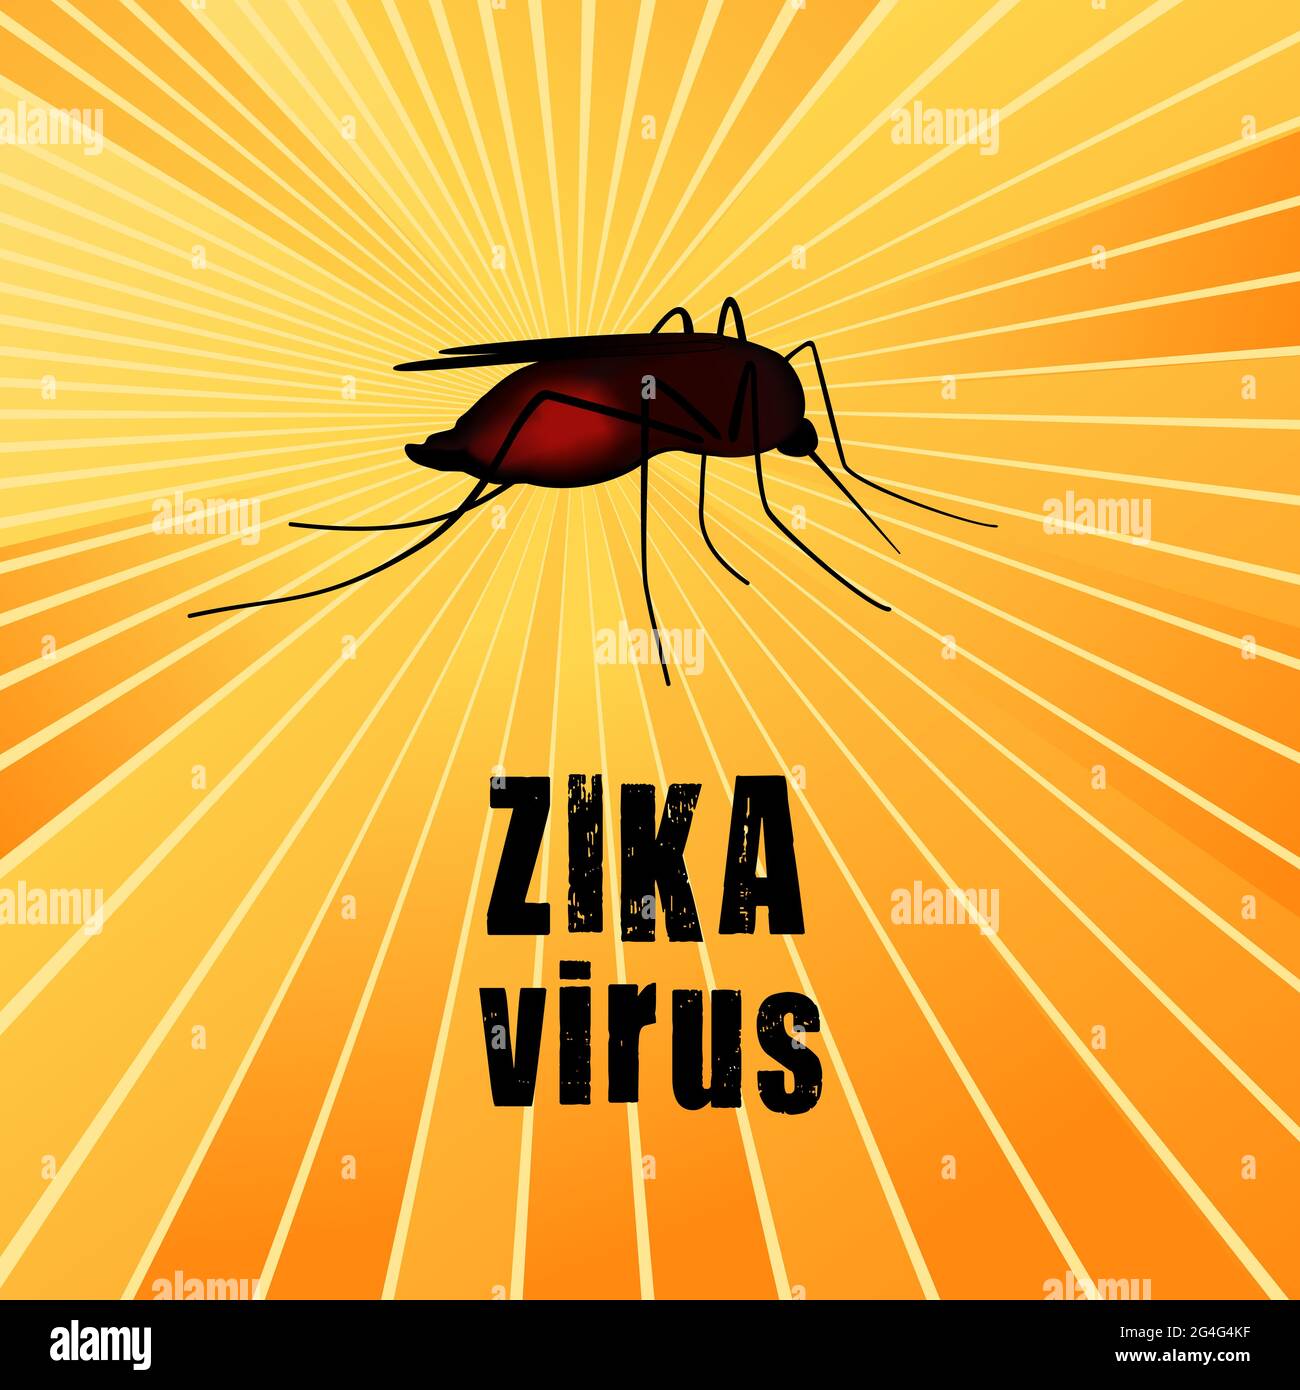 Virus del Zika, mosquito, insecto mordedura lleno de sangre, riesgo para la salud pública, vector de enfermedades infecciosas, antecedentes de rayos solares Foto de stock